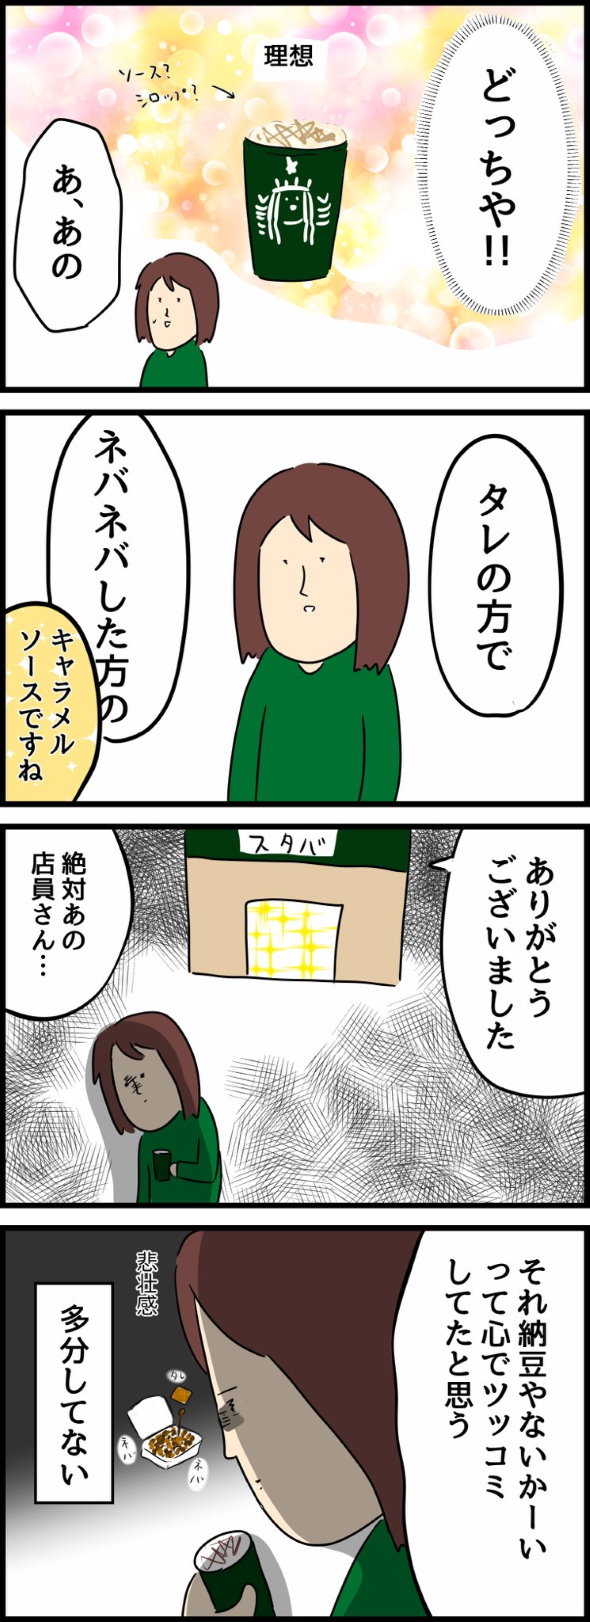 スターバックス 呪文 カスタム 注文 漫画